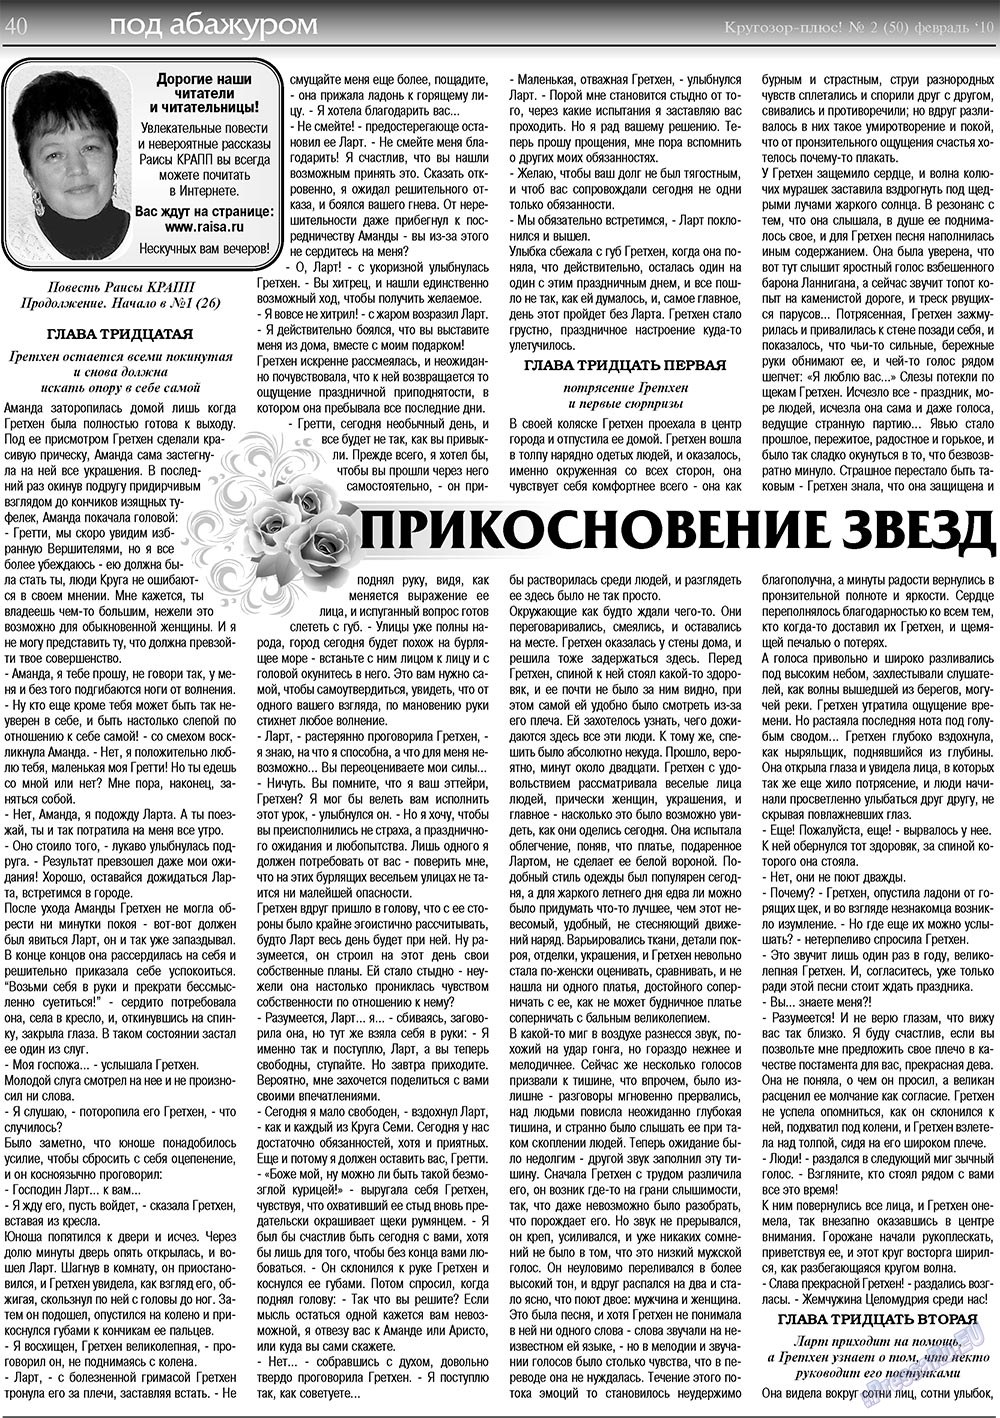 Кругозор плюс!, газета. 2010 №2 стр.40